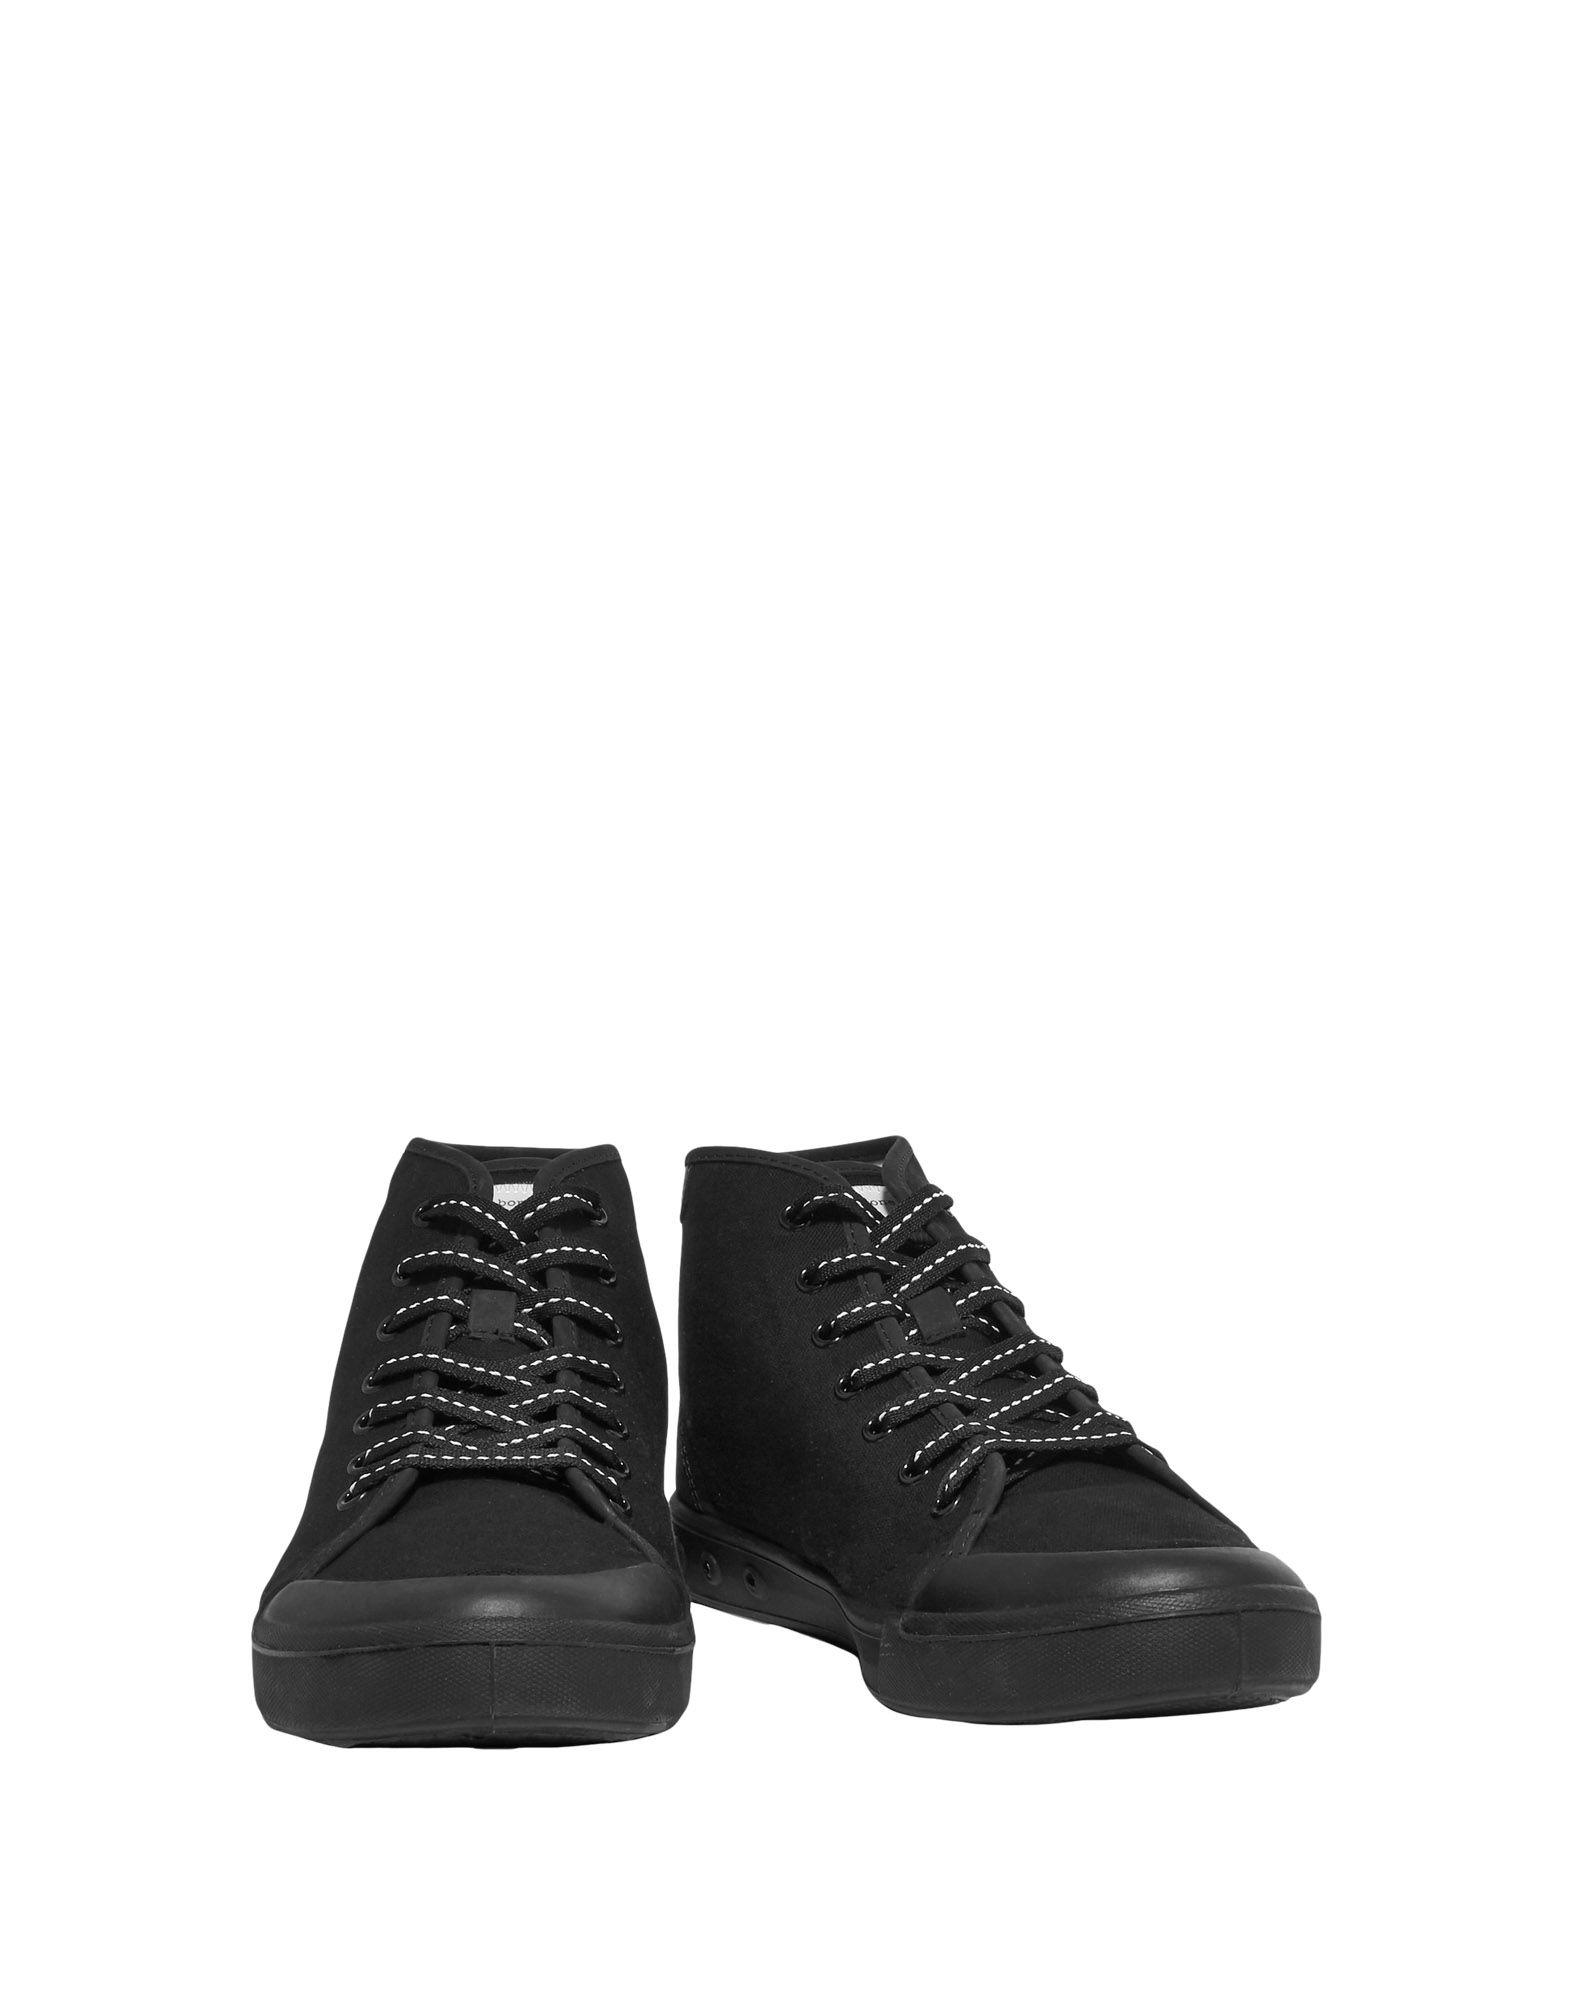 Rag & Bone Leather High-tops & Sneakers in Black - Lyst